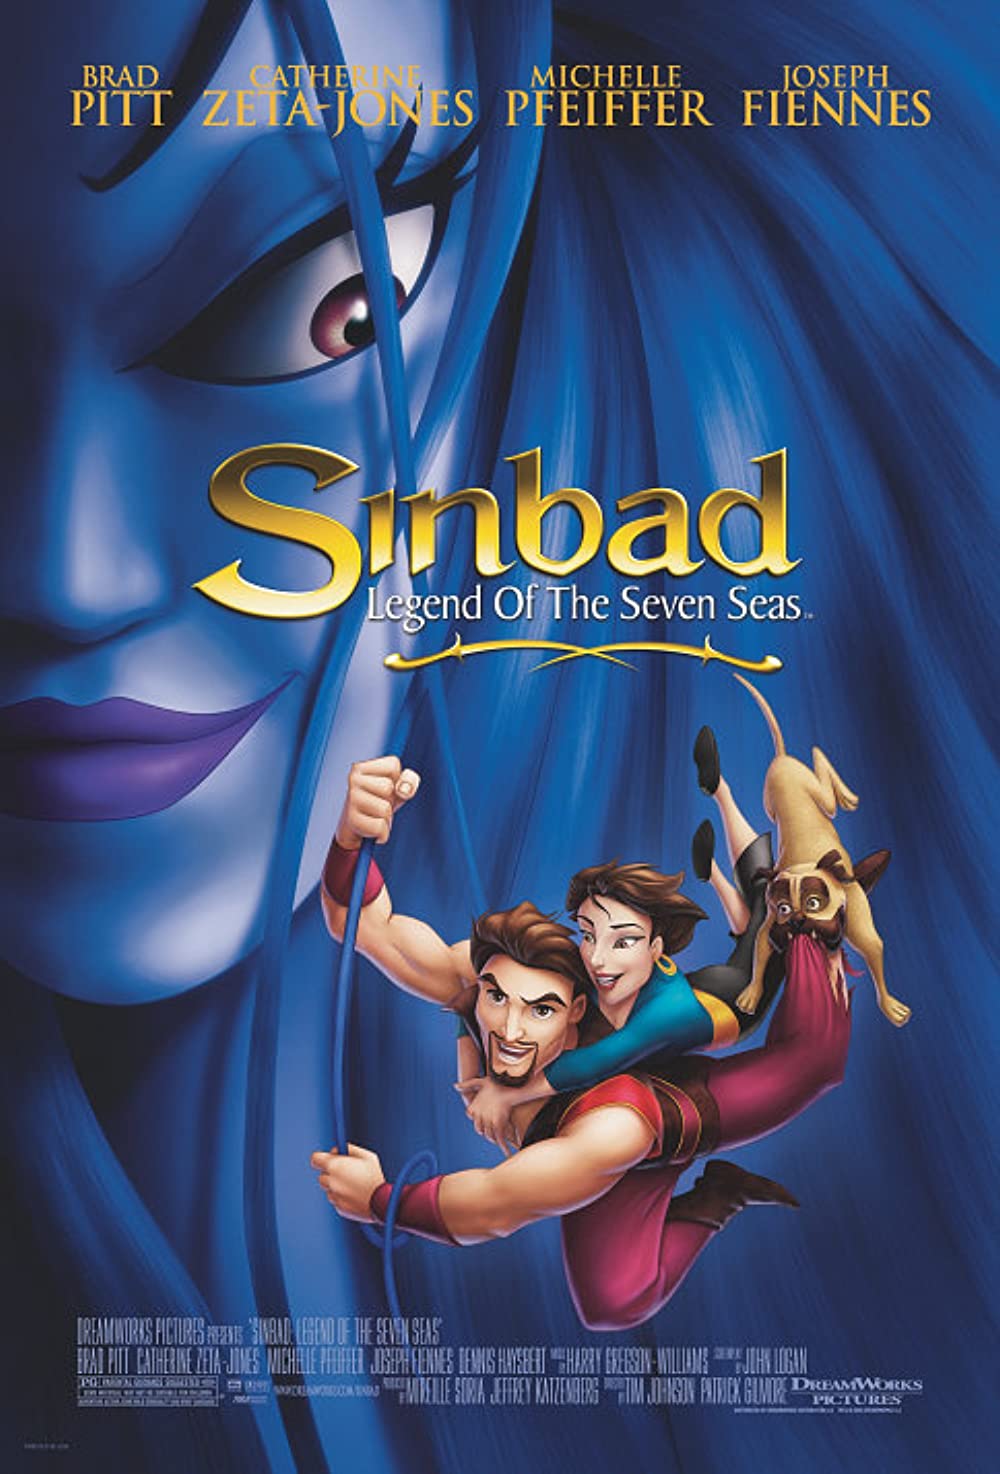 ดูหนังออนไลน์ฟรี Sinbad Legend Of The Seven Seas (2003) ซินแบด พิชิตตำนาน 7 คาบสมุทร หนังเต็มเรื่อง หนังมาสเตอร์ ดูหนังHD ดูหนังออนไลน์ ดูหนังใหม่